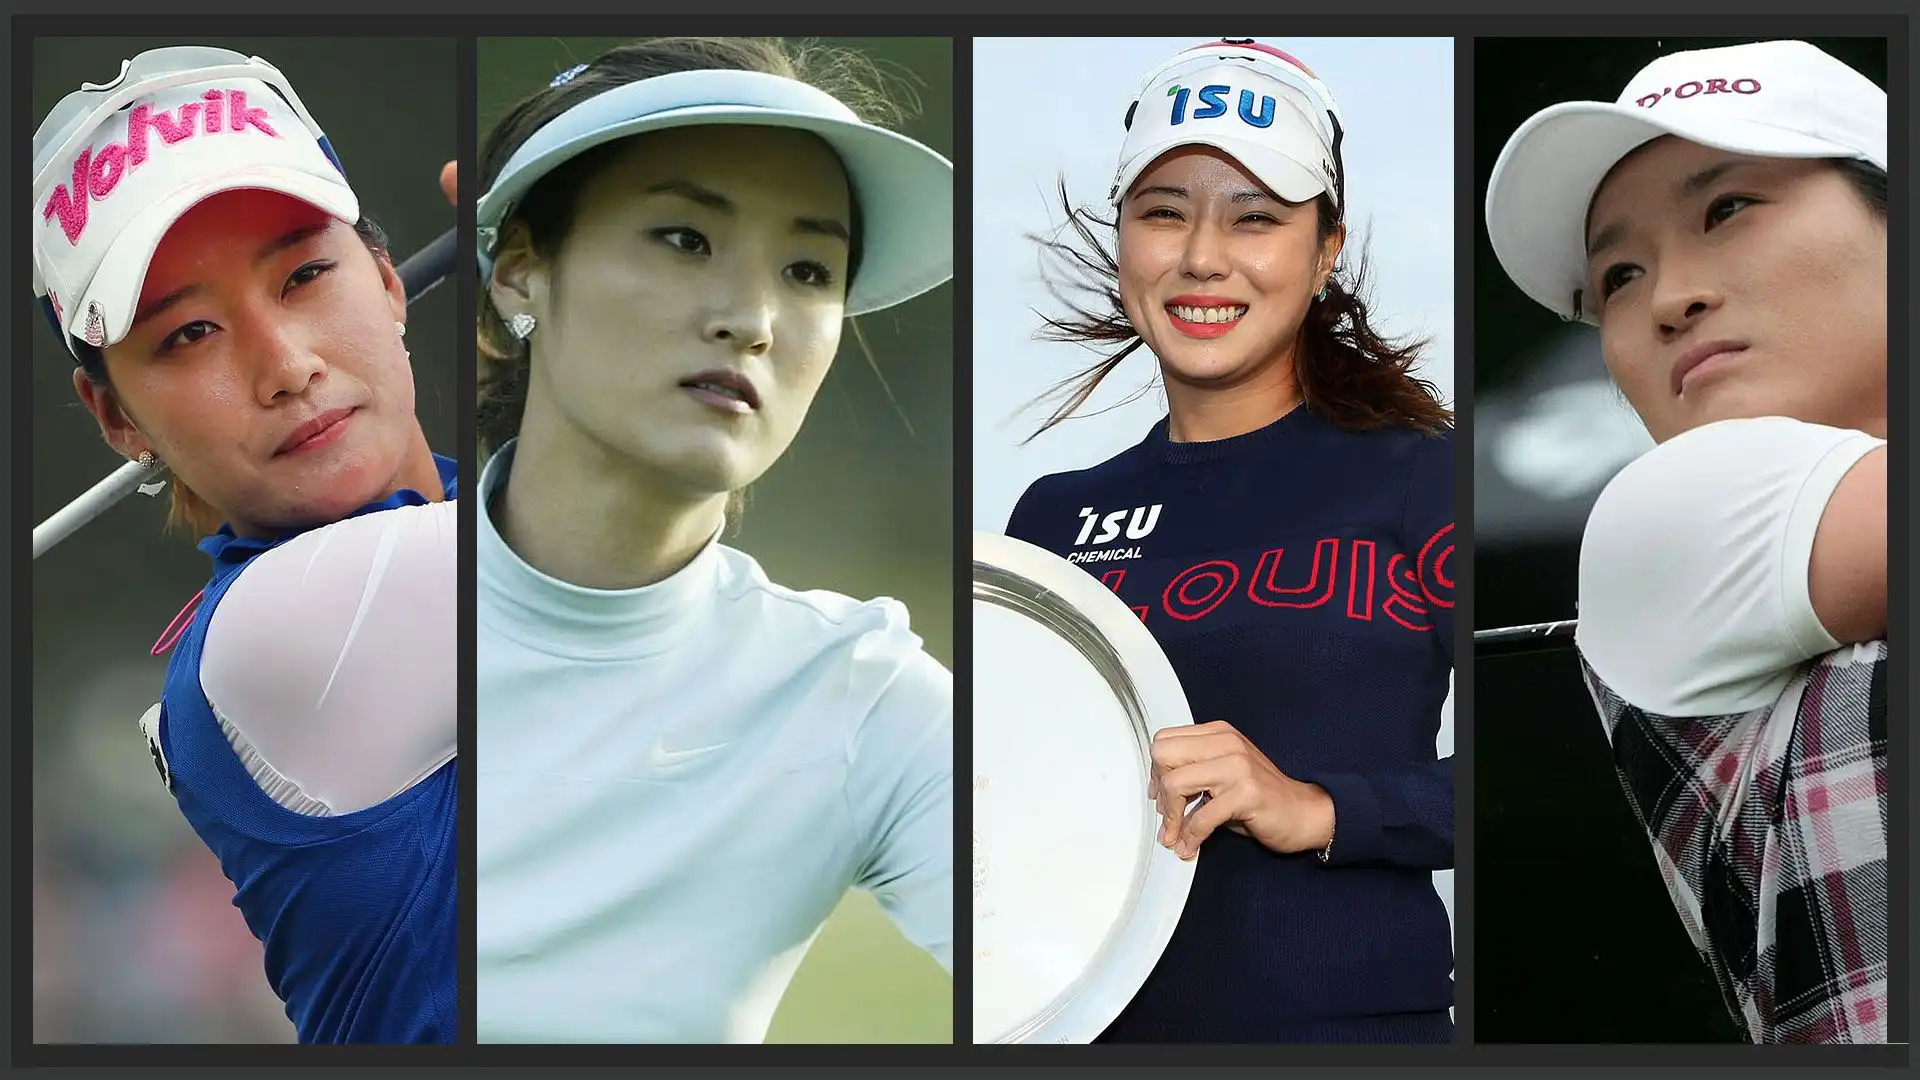 La Top 20 dei premi in denaro accumulati in carriera nel circuito LPGA dalle tenniste della Corea del Sud